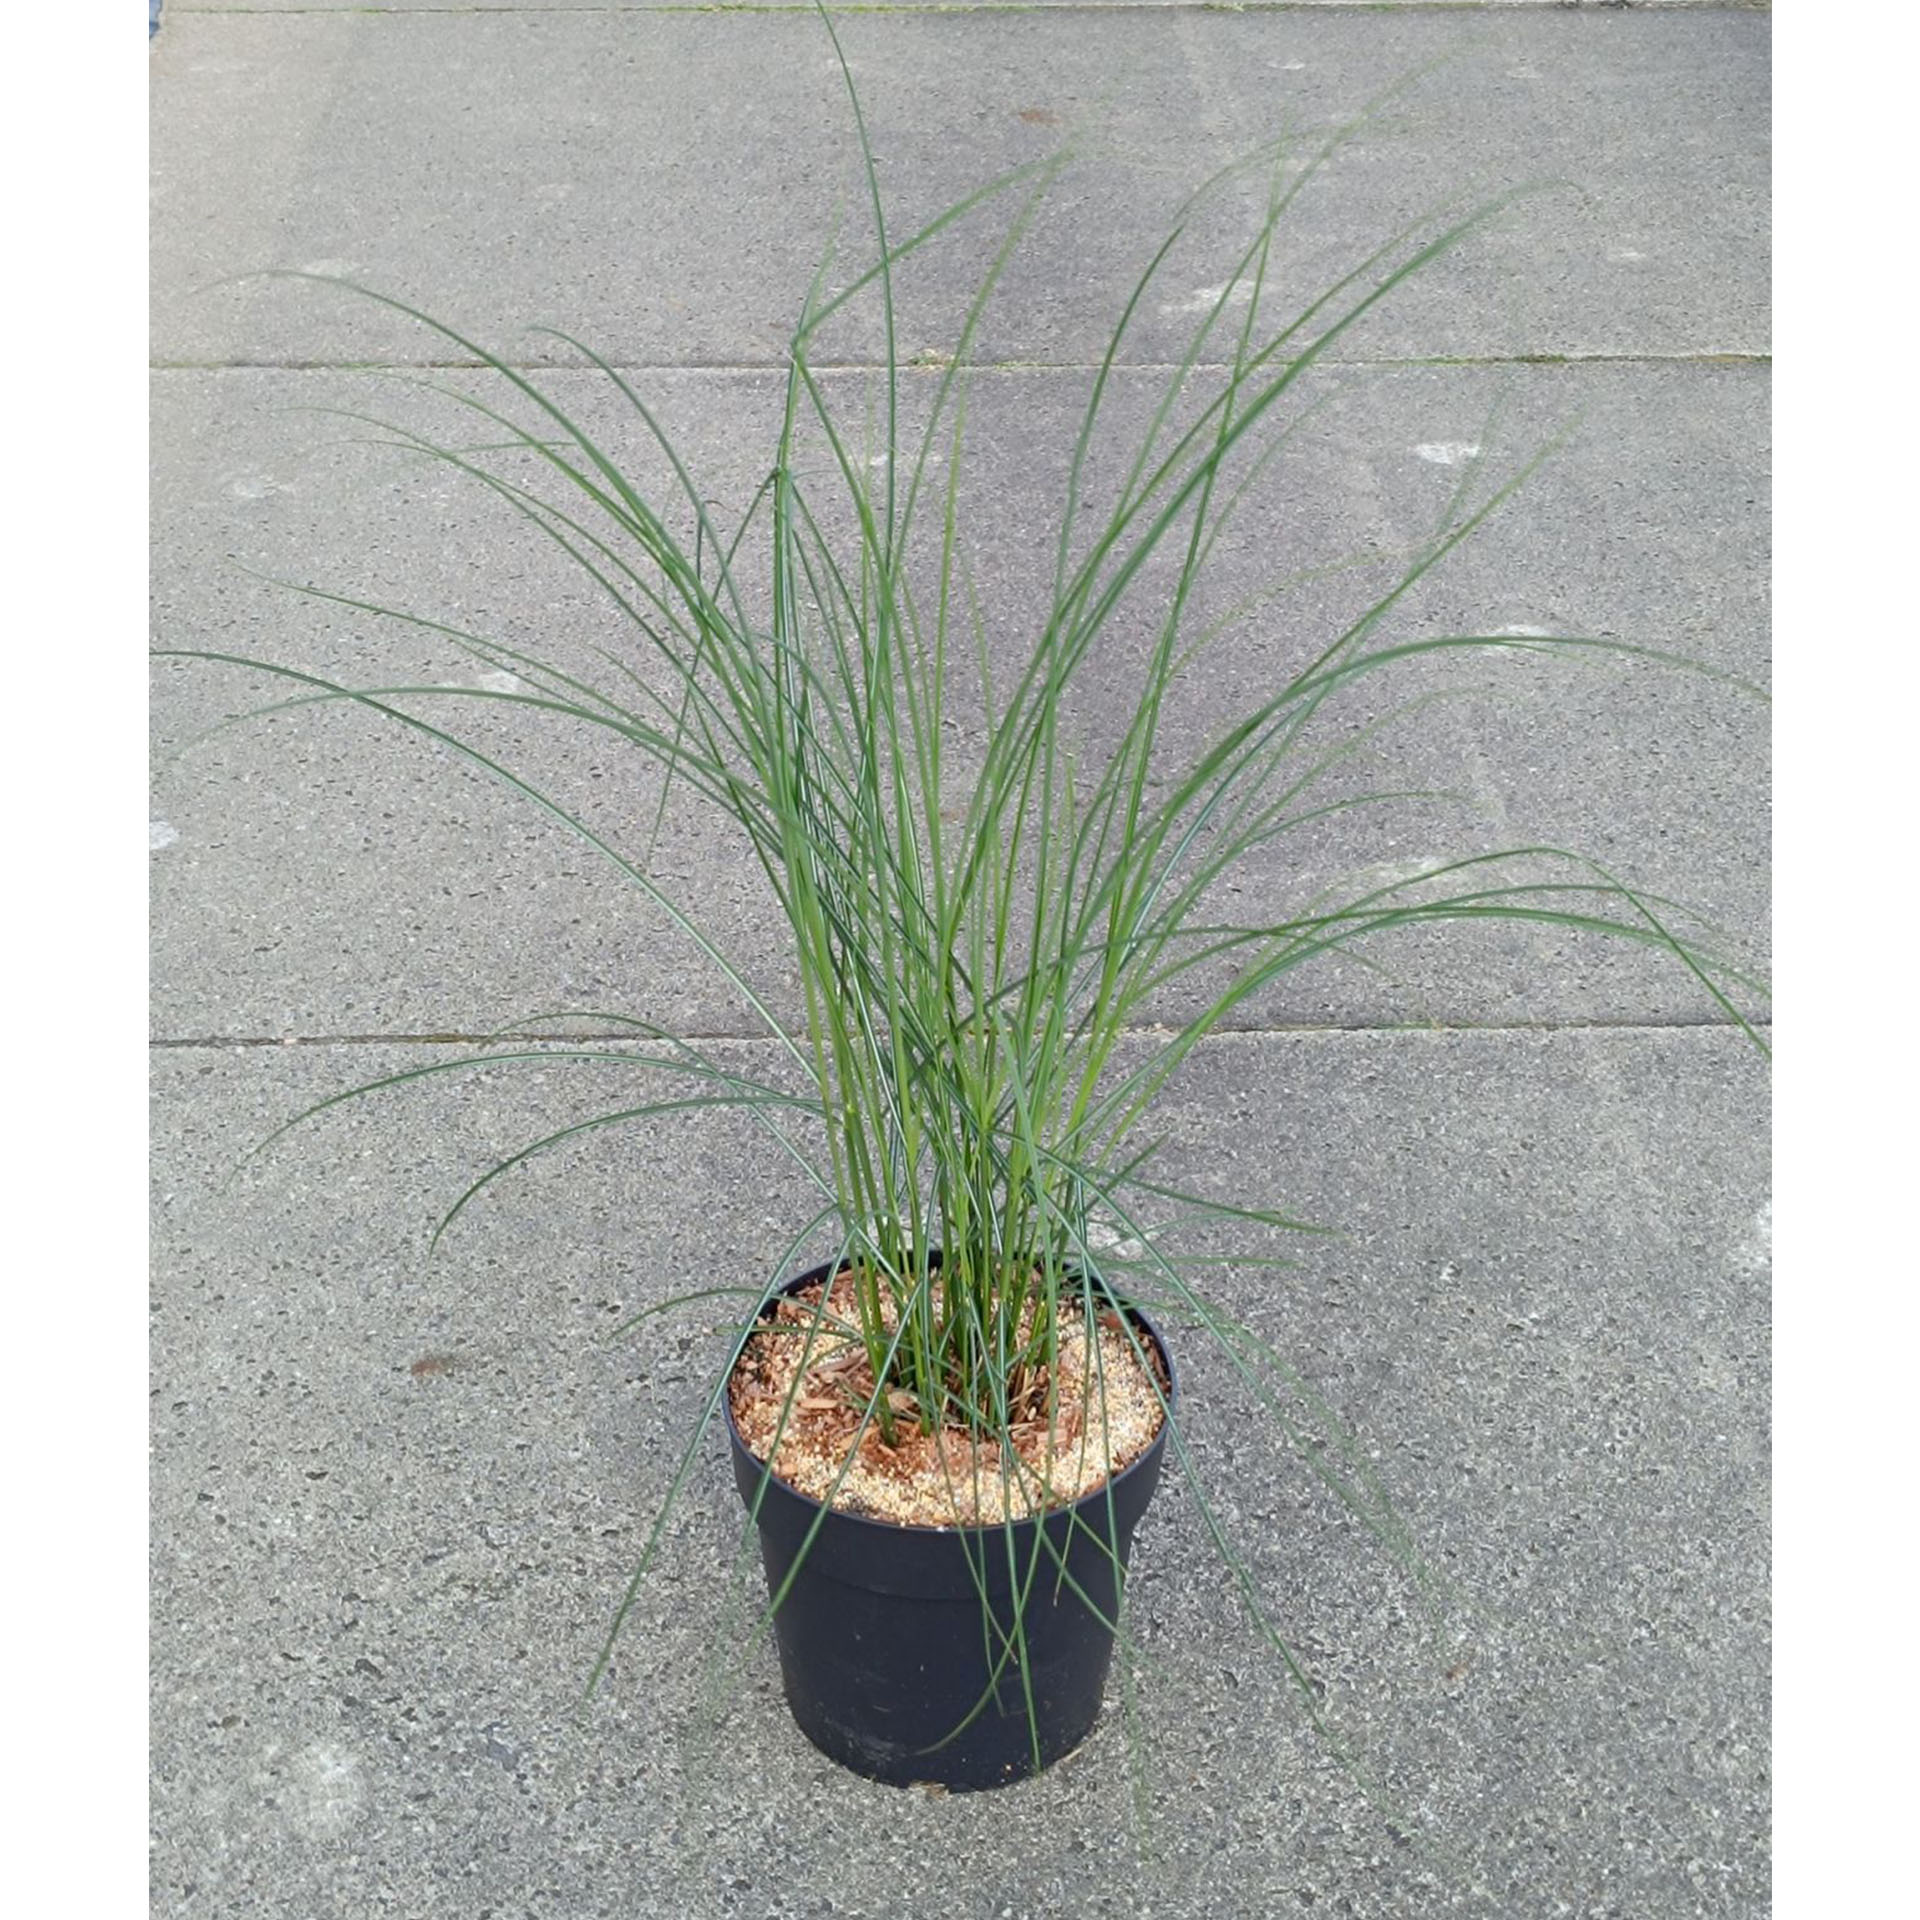 Chinaschilf - Miscanthus sinensis 'Kleine Fontäne', Pflanze, Vegetation, Gras, Essen, Produzieren